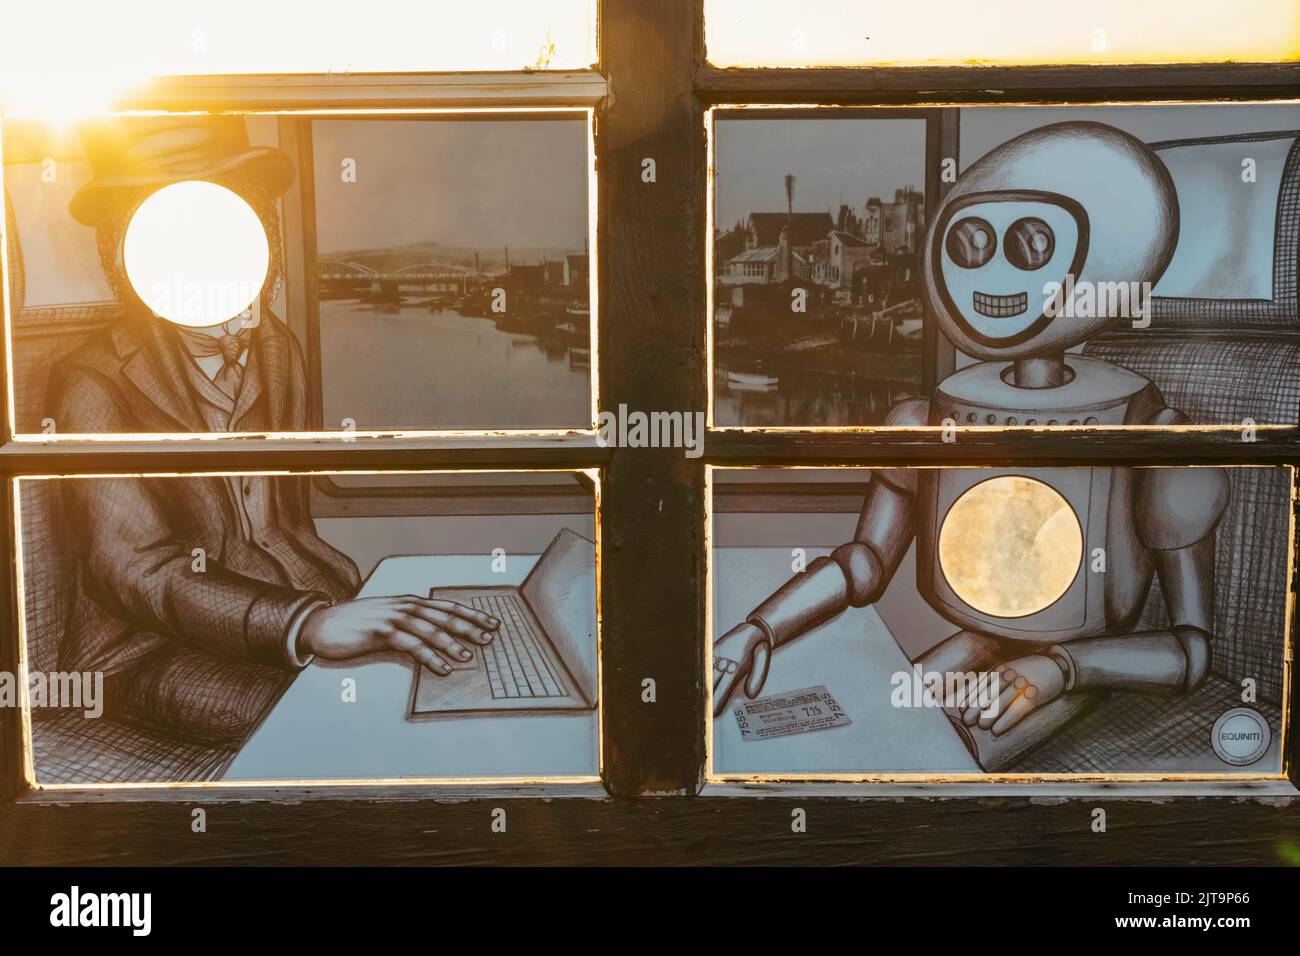 Angleterre, West Sussex, Worthing, Worthing Pier, détail de la vitre représentant le passager et le robot dans le train Carriage Banque D'Images